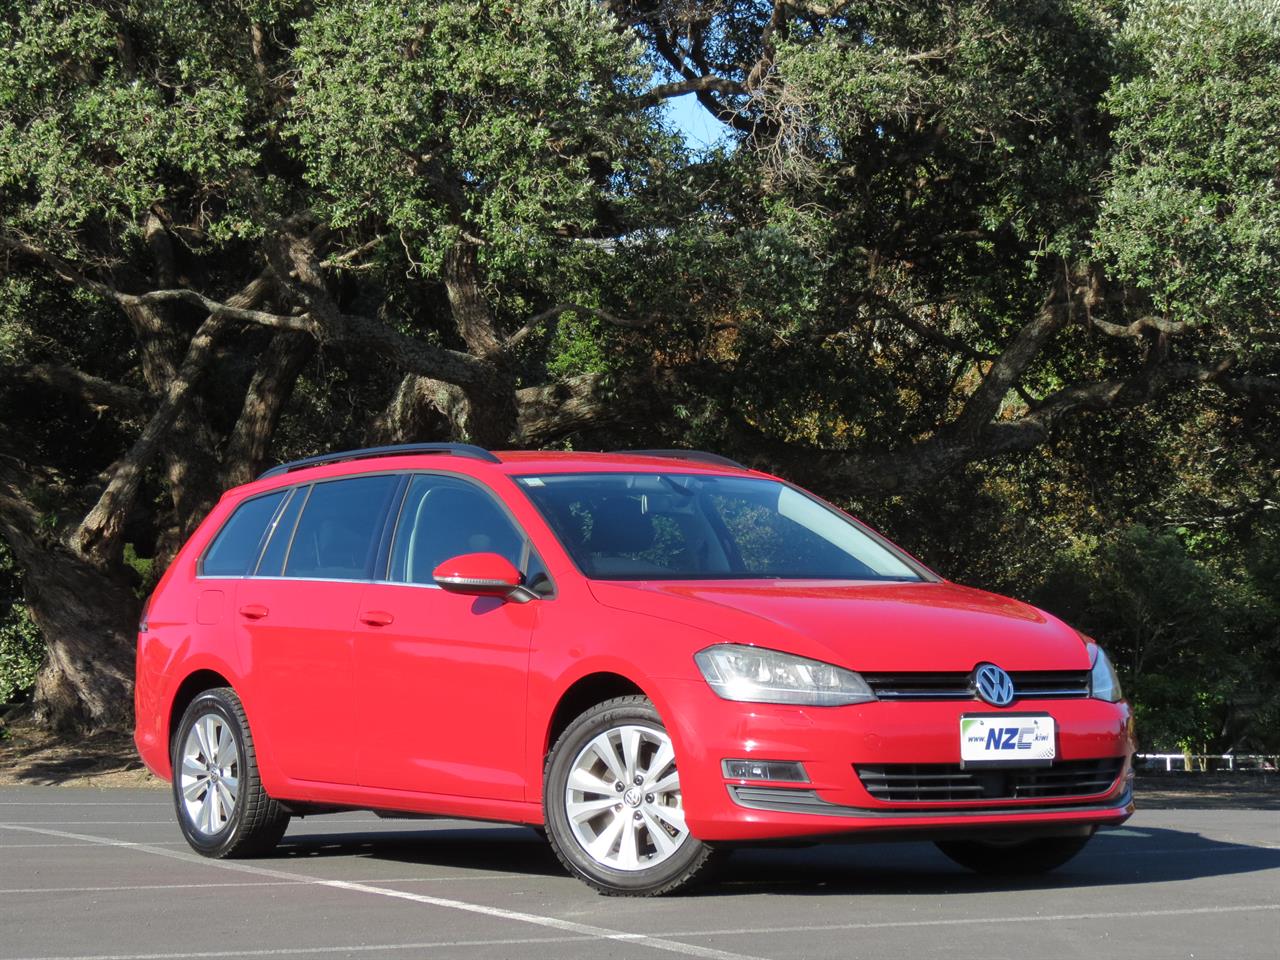 NZC best hot price for 2014 Volkswagen Golf in Auckland